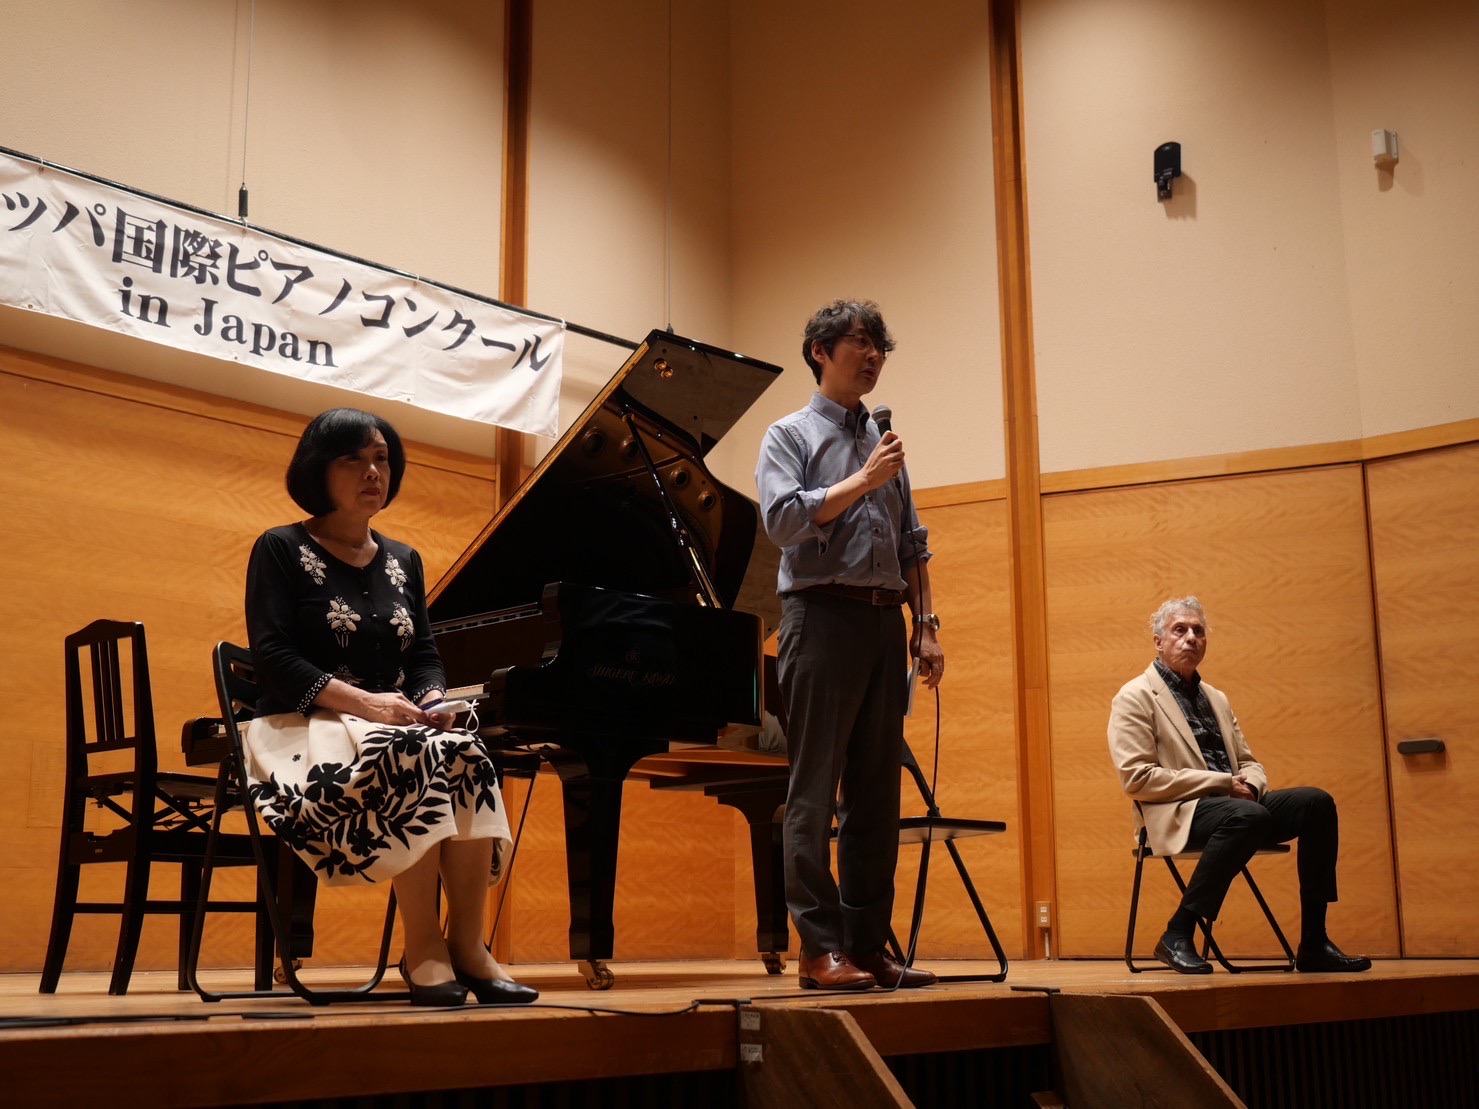 第14回ヨーロッパ国際ピアノコンクールin Japan 広島地区予選